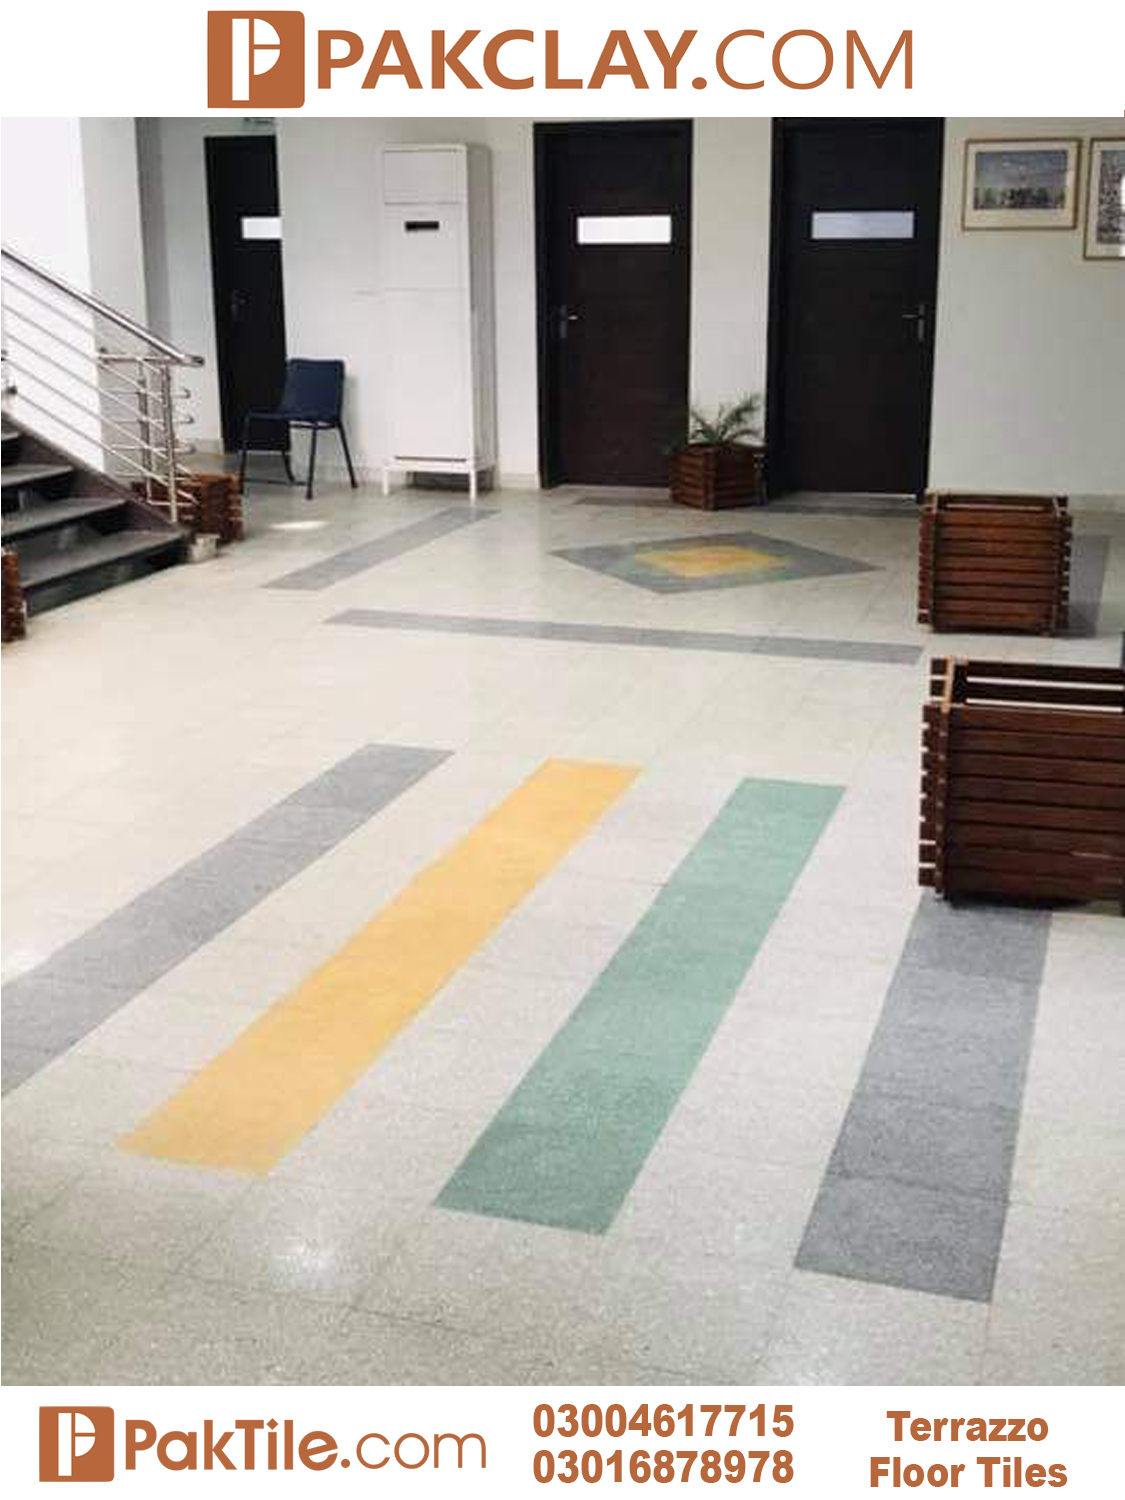 3 Terrazzo Flooring Tiles Price in Pakistan